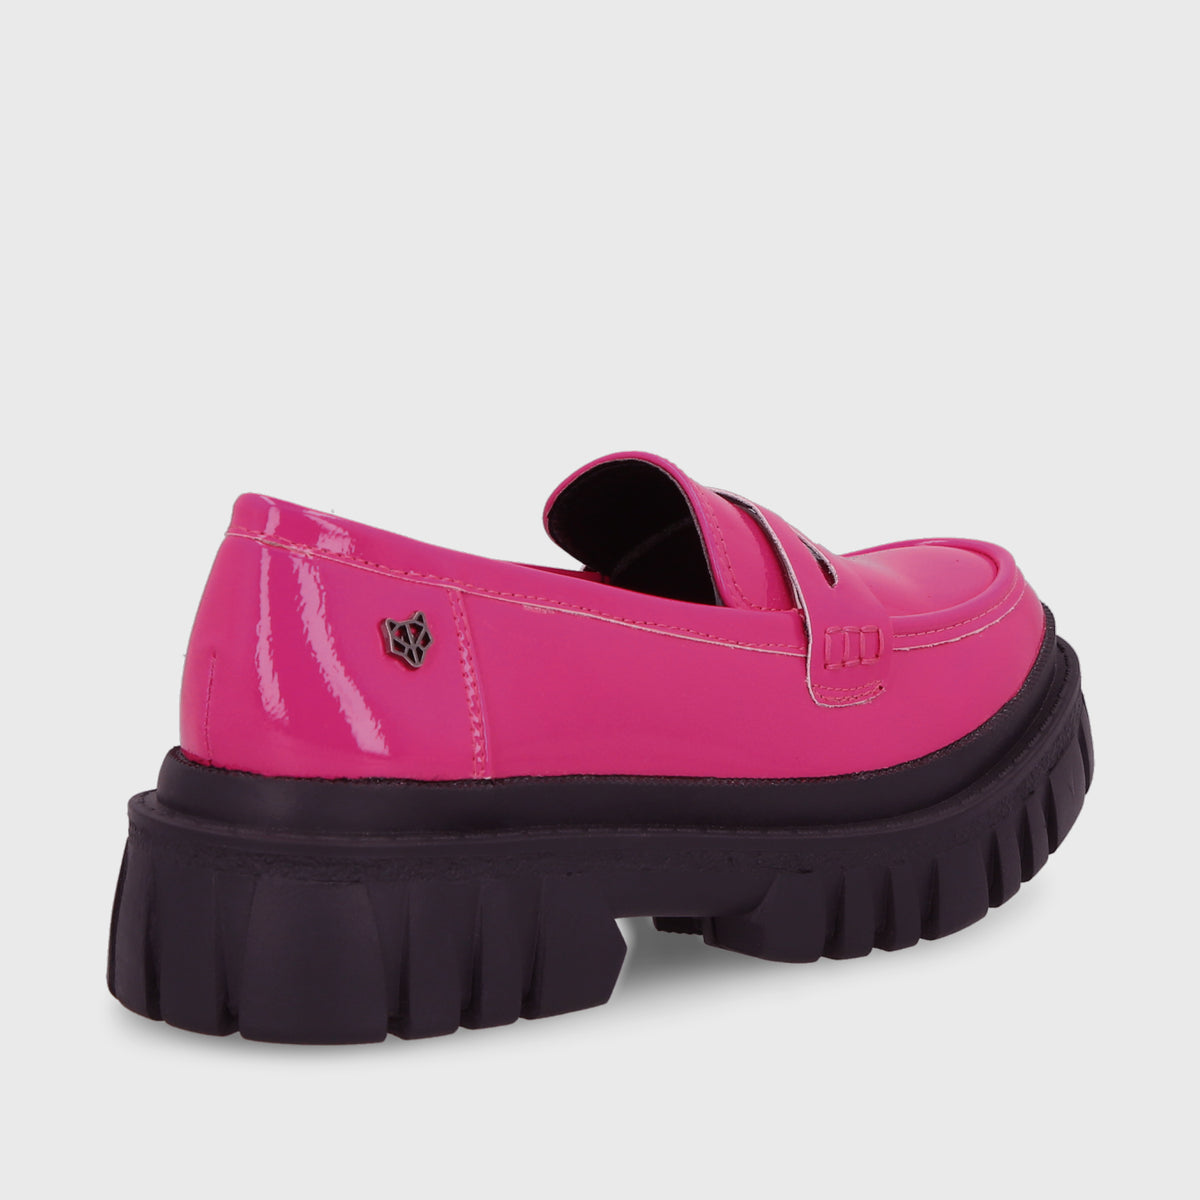 Zapato Fucsia Mujer 35925